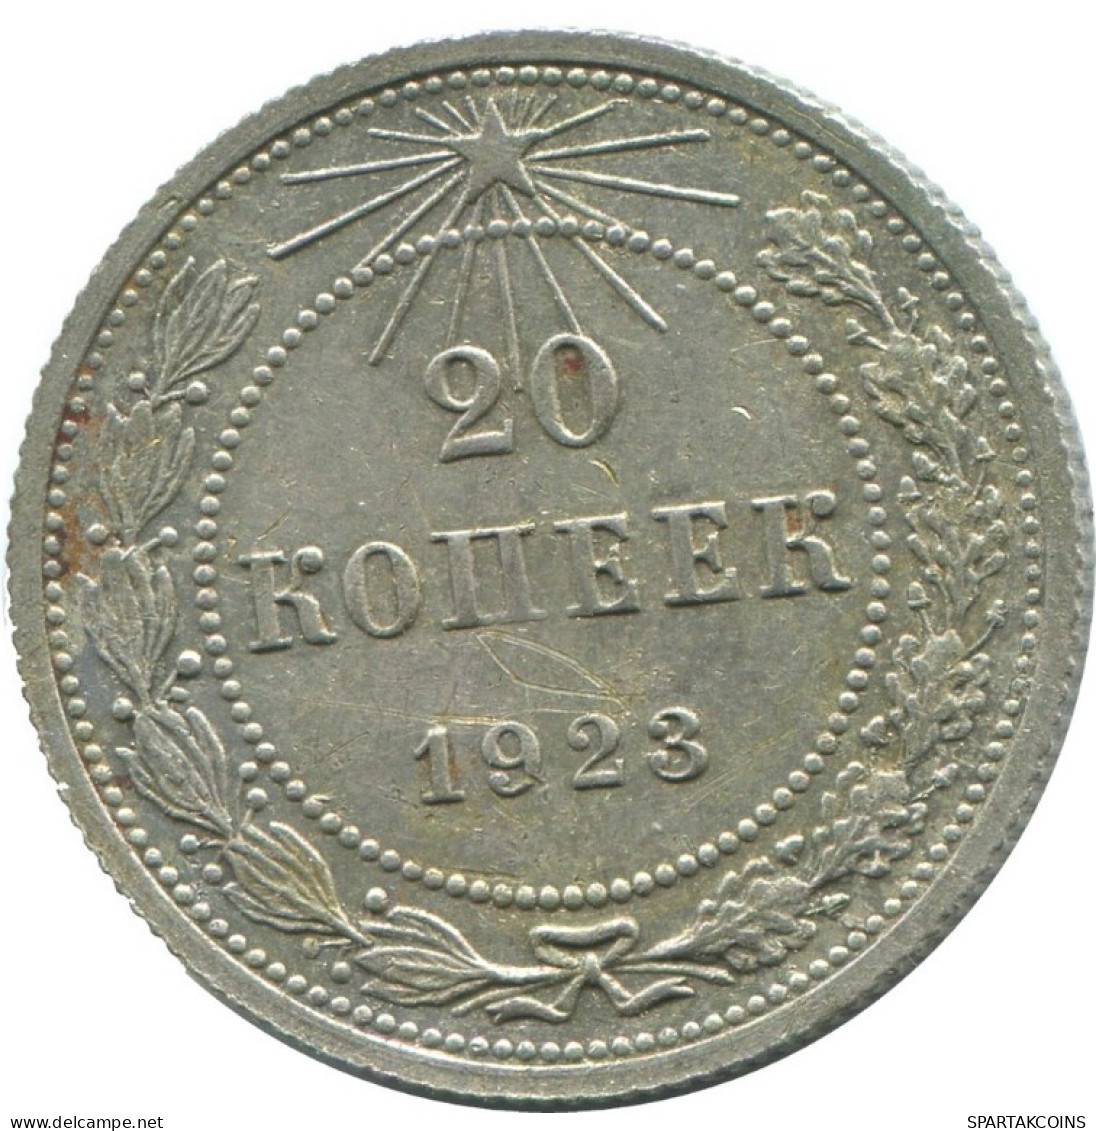 20 KOPEKS 1923 RUSSLAND RUSSIA RSFSR SILBER Münze HIGH GRADE #AF718.D.A - Russia